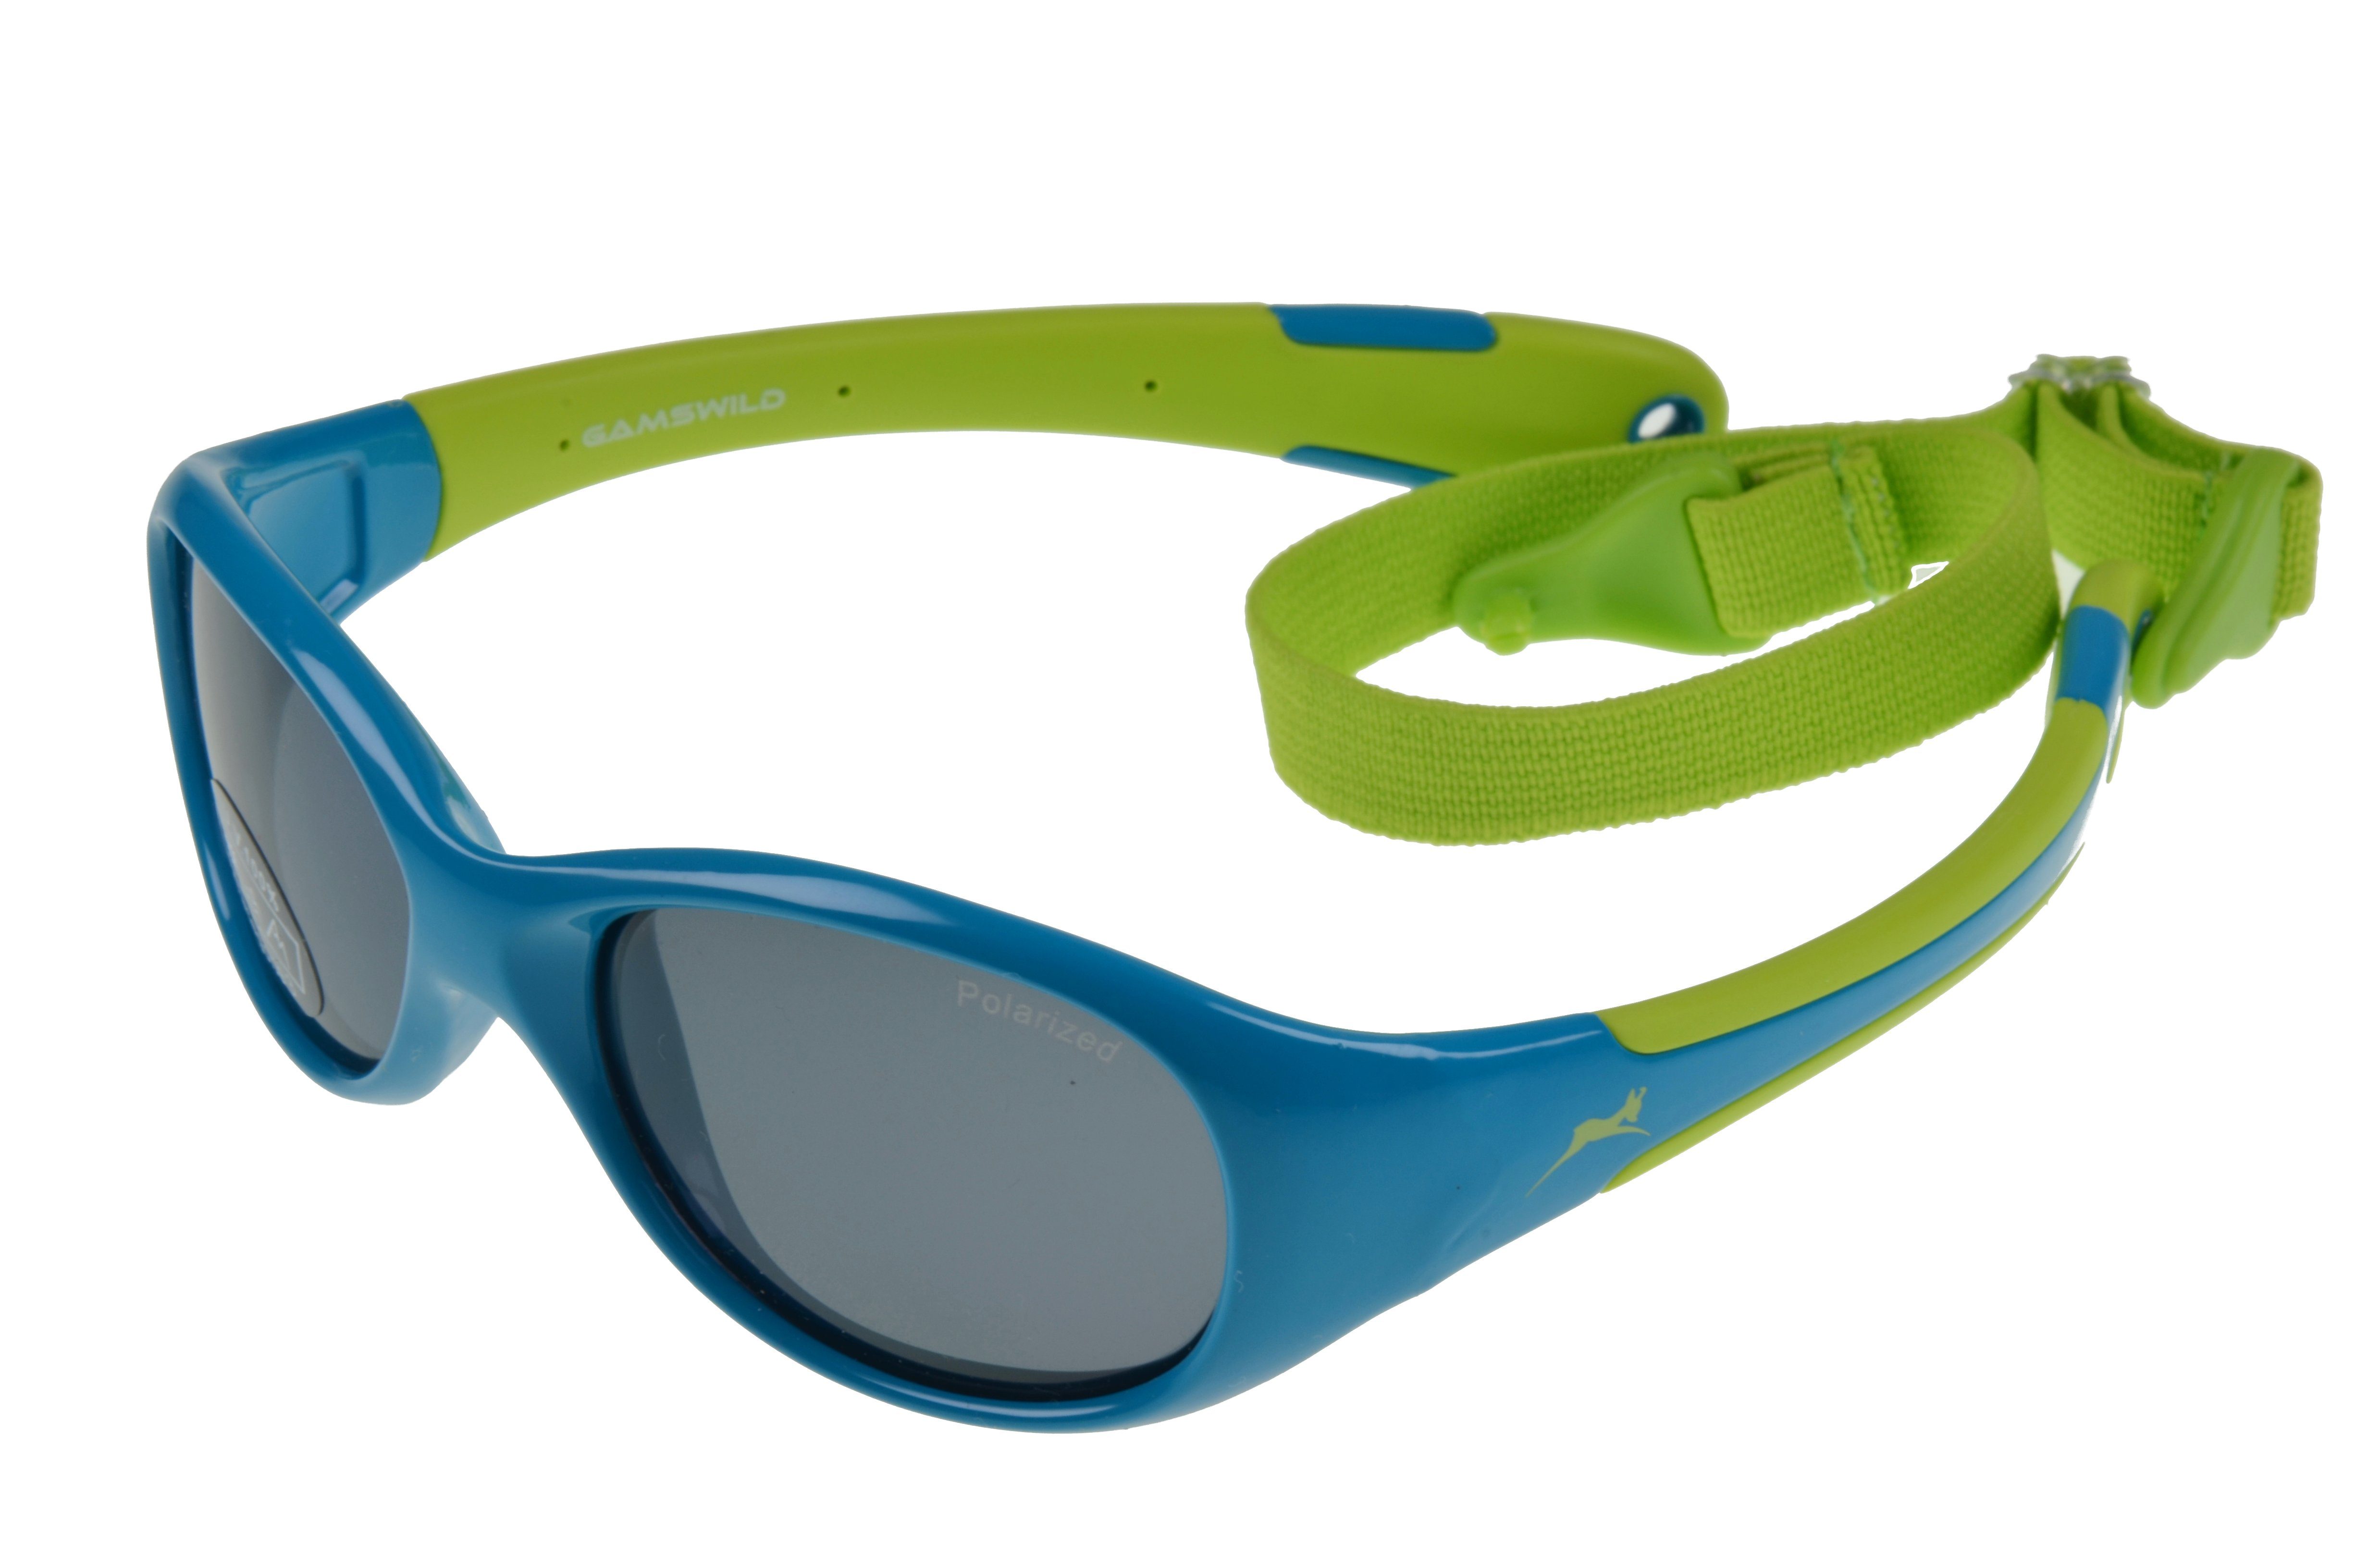 Gamswild Sonnenbrille »WK5618 GAMSKIDS Kinderbrille 2-5 Jahre  Kleinkindbrille Mädchen Jungen kids Unisex, rosa, grün, rot-orange« incl.  Brillenband online kaufen | OTTO